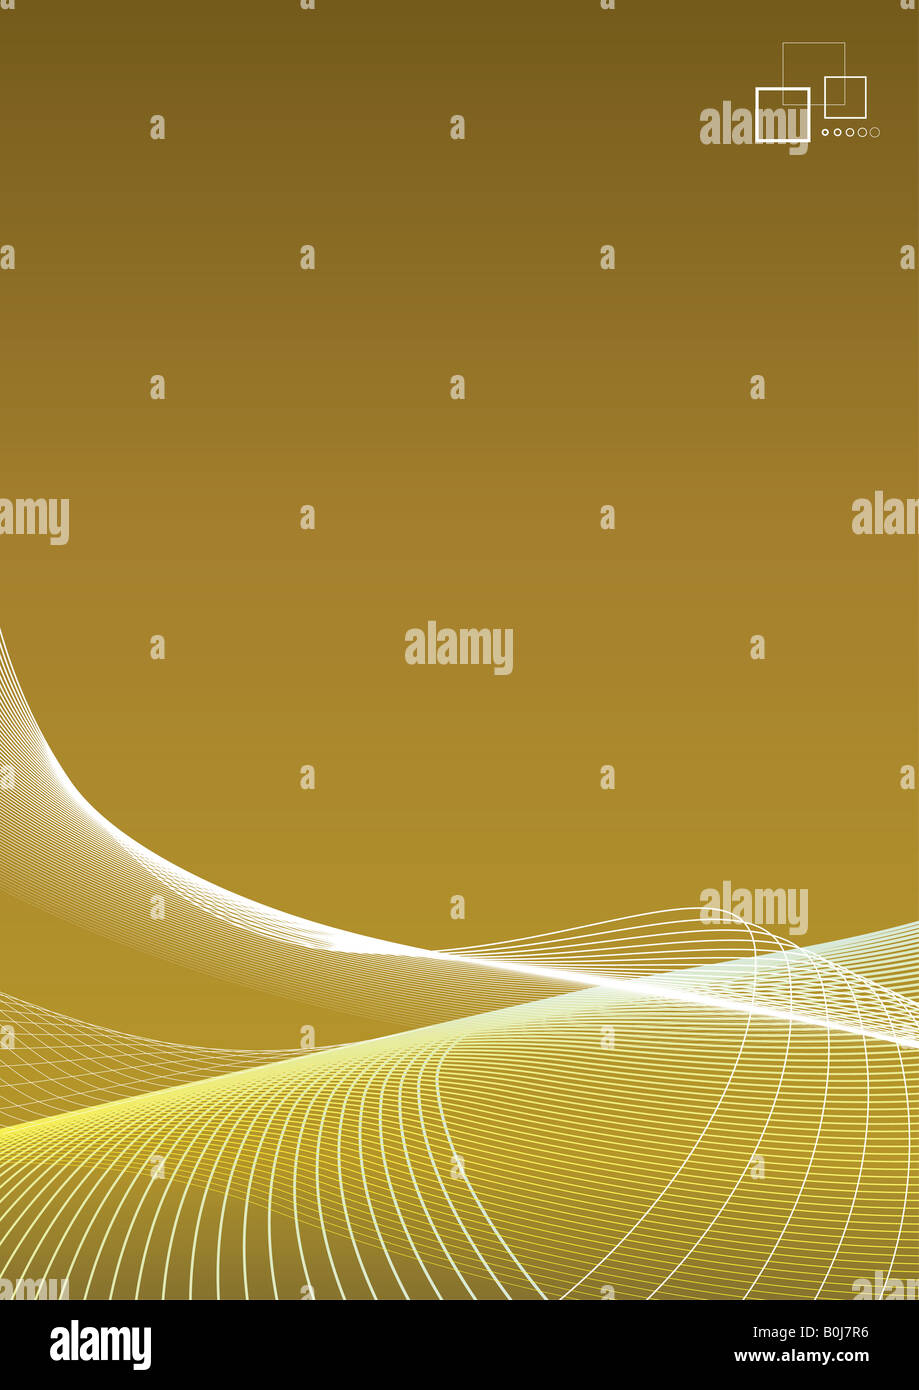 Ilustración vectorial de arte forrada en blanco sobre un fondo dorado de gradiente con plantilla logotipo o mensaje de anuncio en la esquina limpia Foto de stock